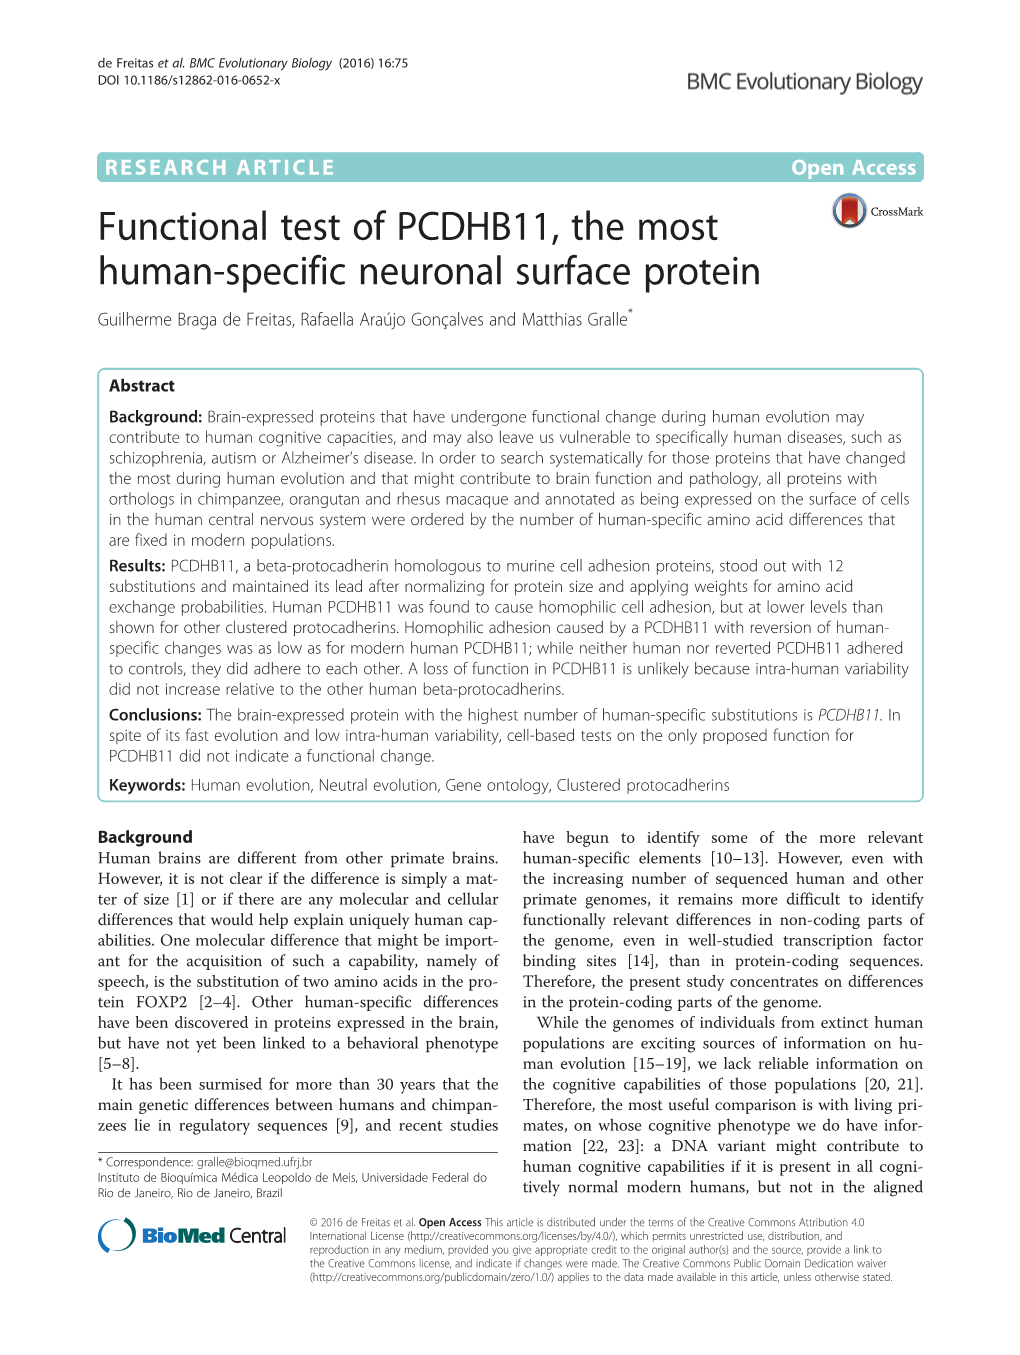 Functional Test of PCDHB11, the Most Human-Specific Neuronal Surface Protein Guilherme Braga De Freitas, Rafaella Araújo Gonçalves and Matthias Gralle*